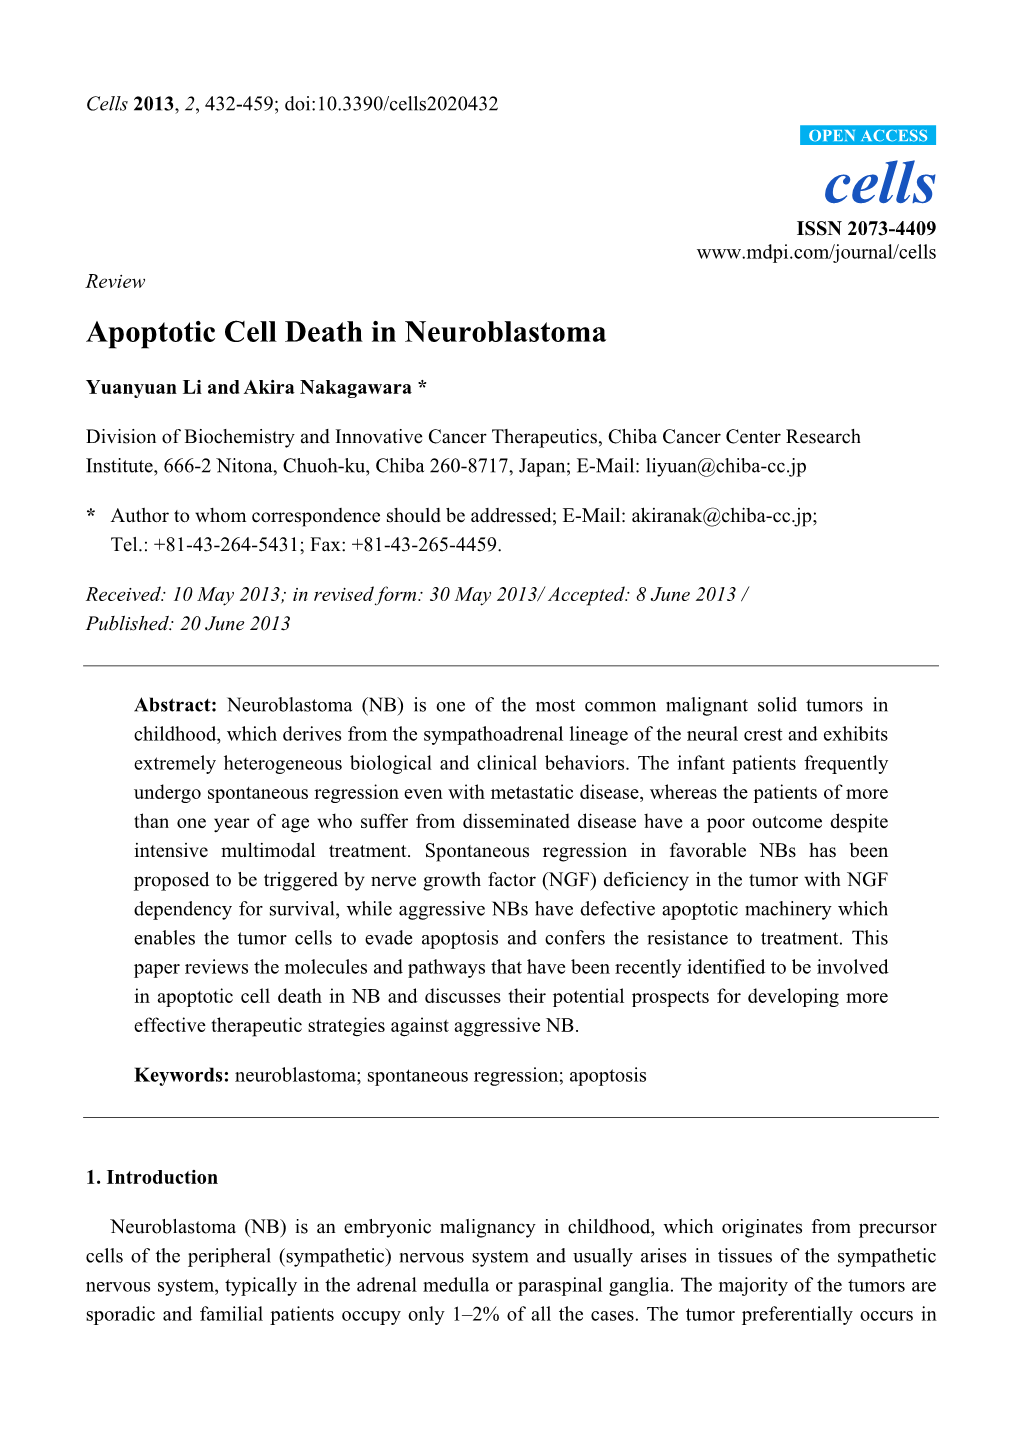 Apoptotic Cell Death in Neuroblastoma